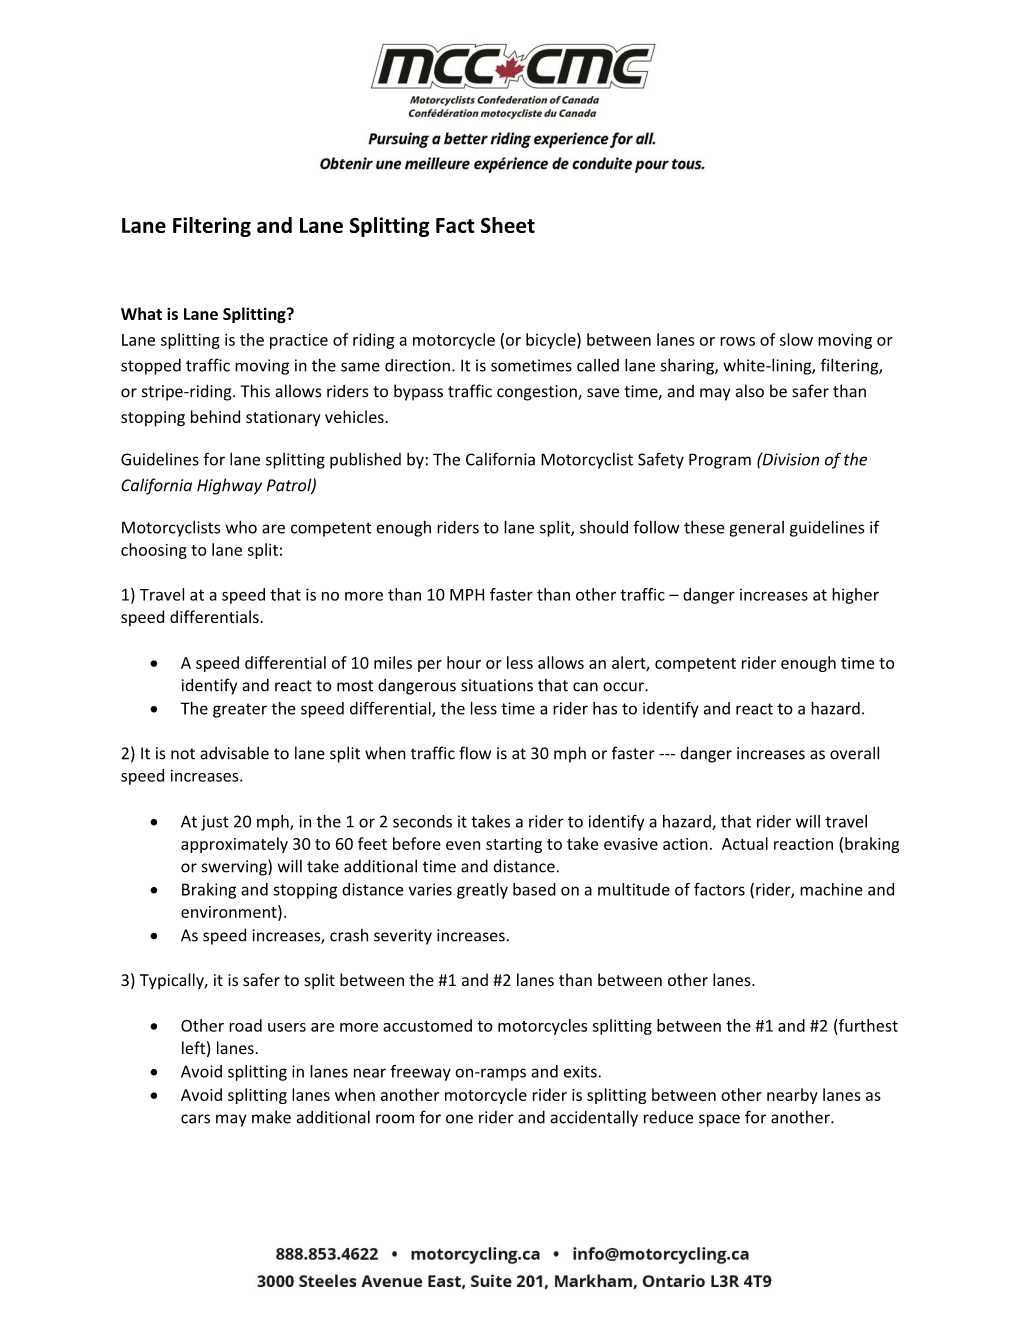 Lane Filtering and Lane Splitting Fact Sheet